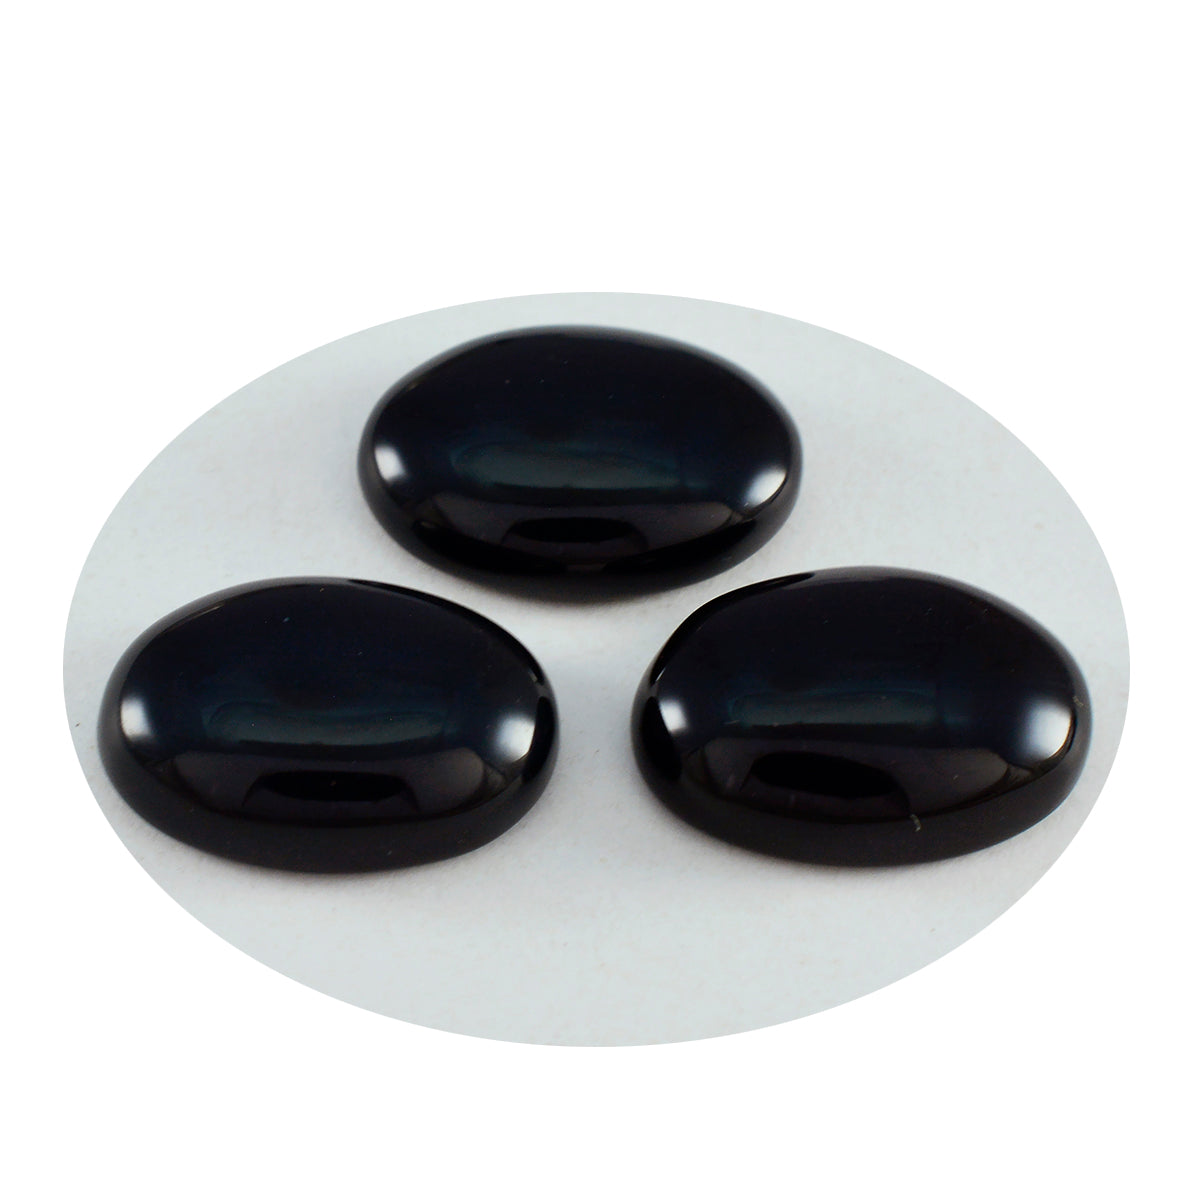 Riyogems 1 Stück schwarzer Onyx-Cabochon, 10 x 14 mm, ovale Form, verblüffender Qualitätsstein